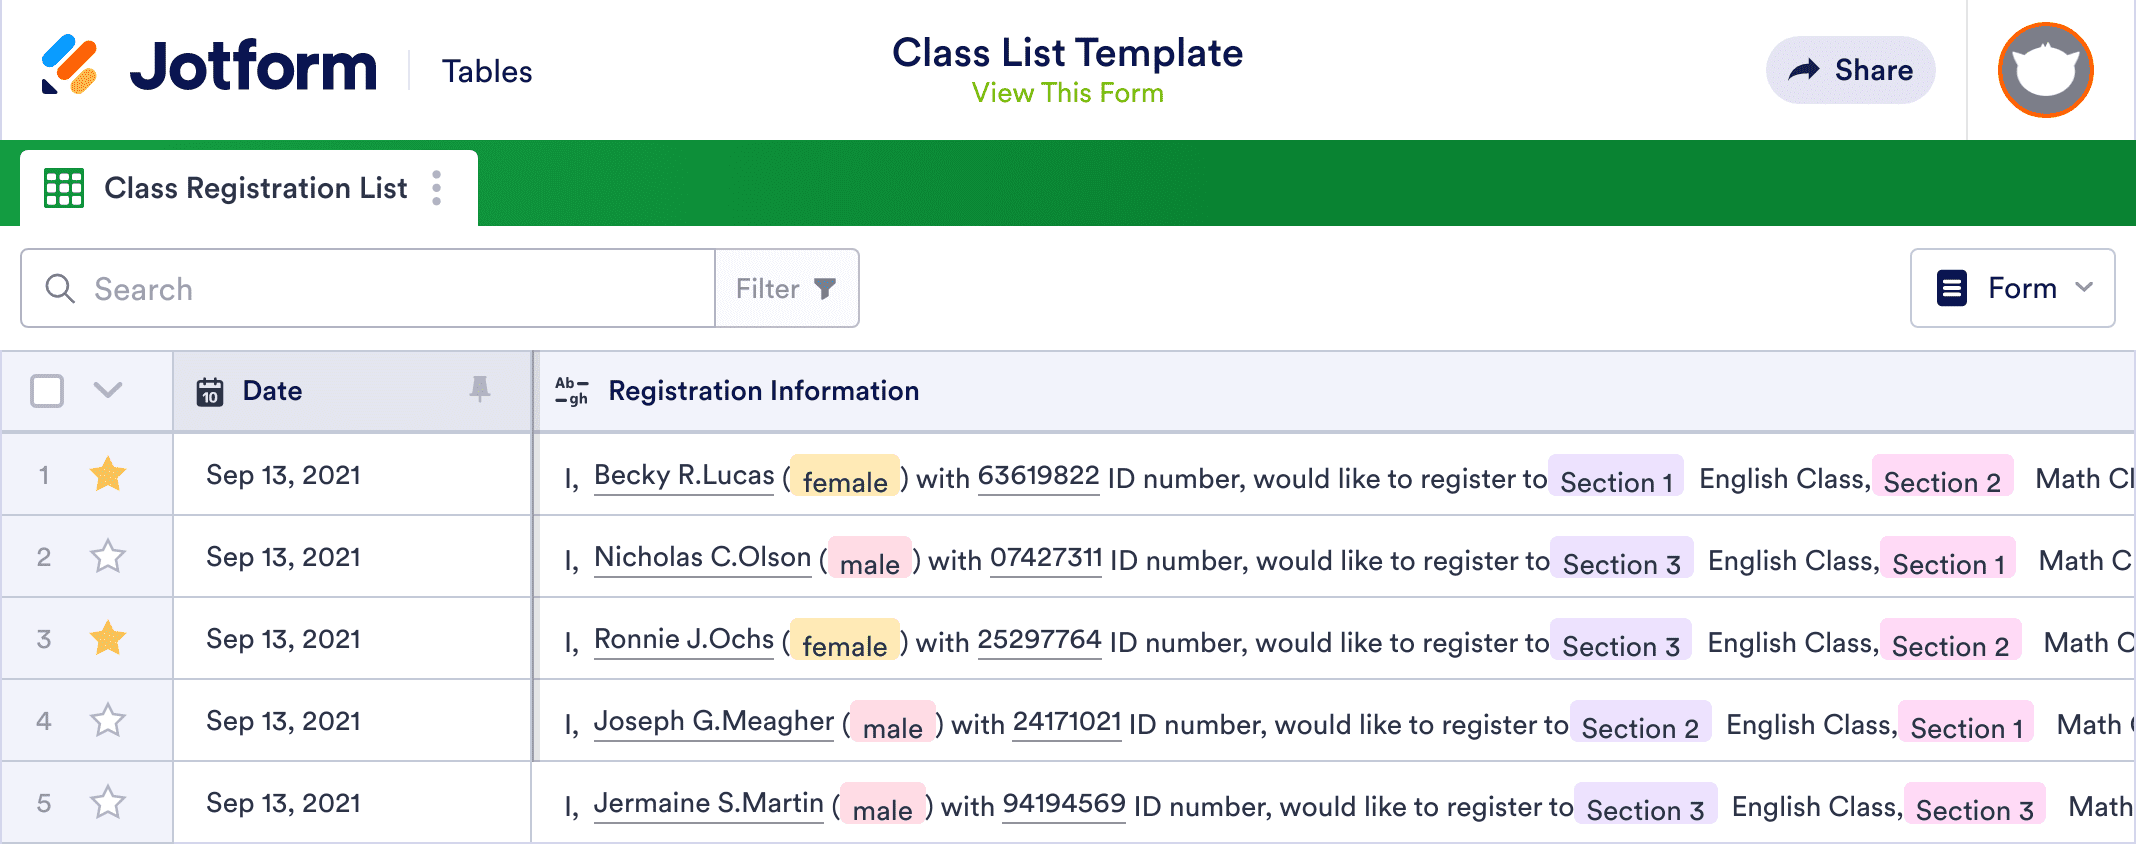 Class List Template